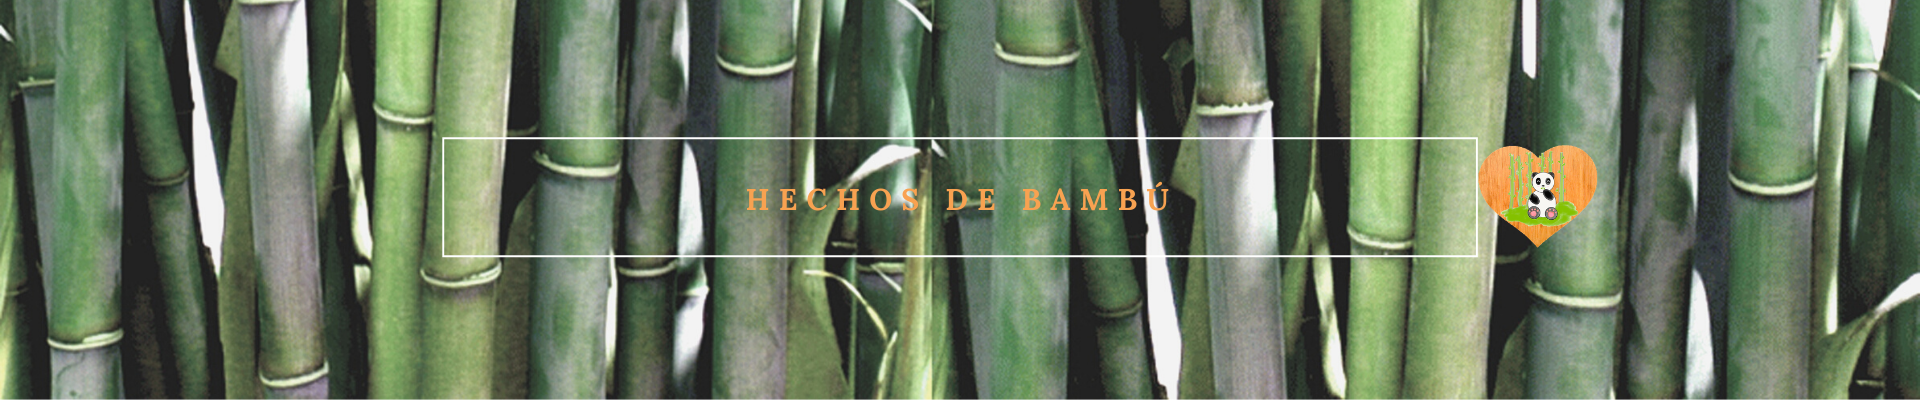 Hechos de Bambu